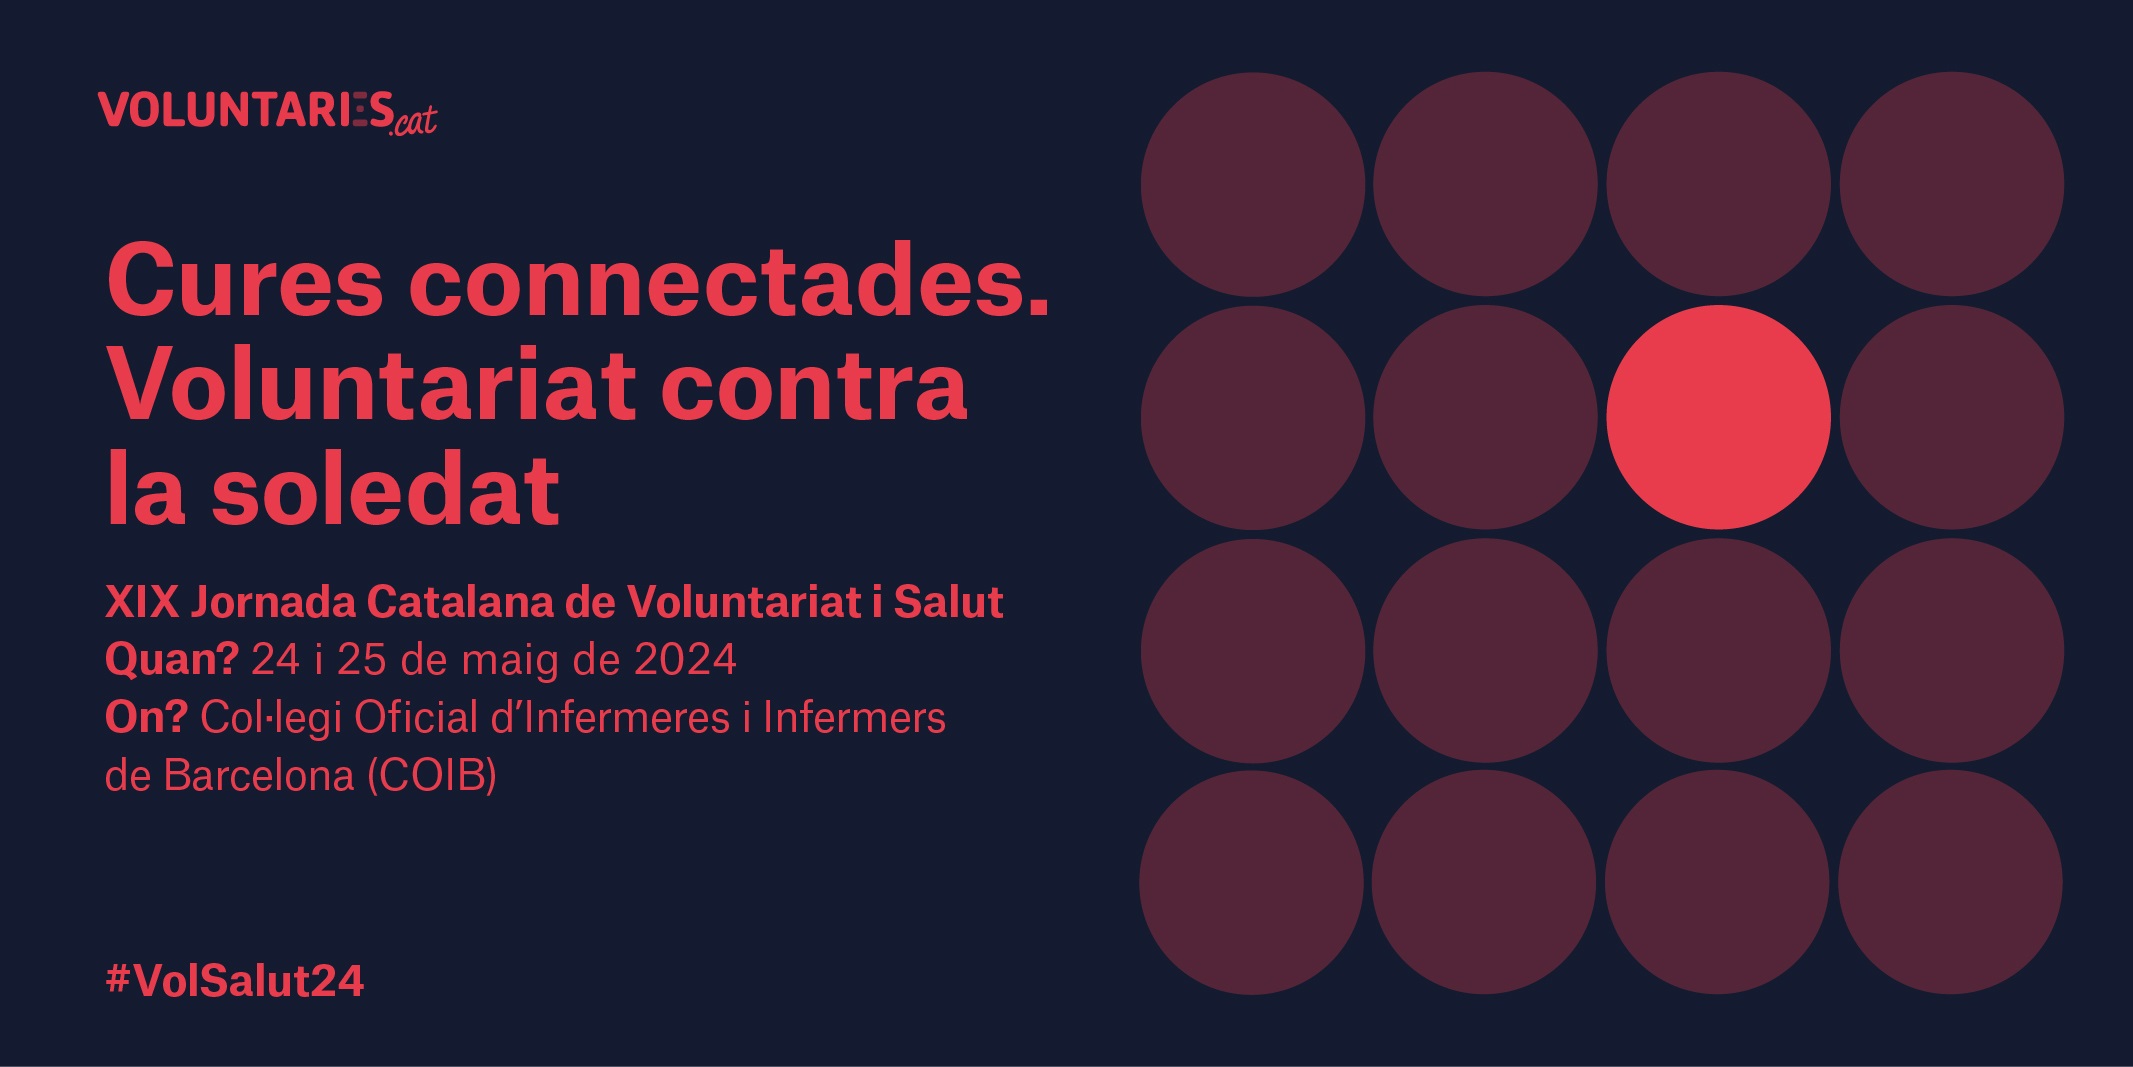 La XIX Jornada Catalana de Voluntariat i Salut se centra en la soledat no desitjada